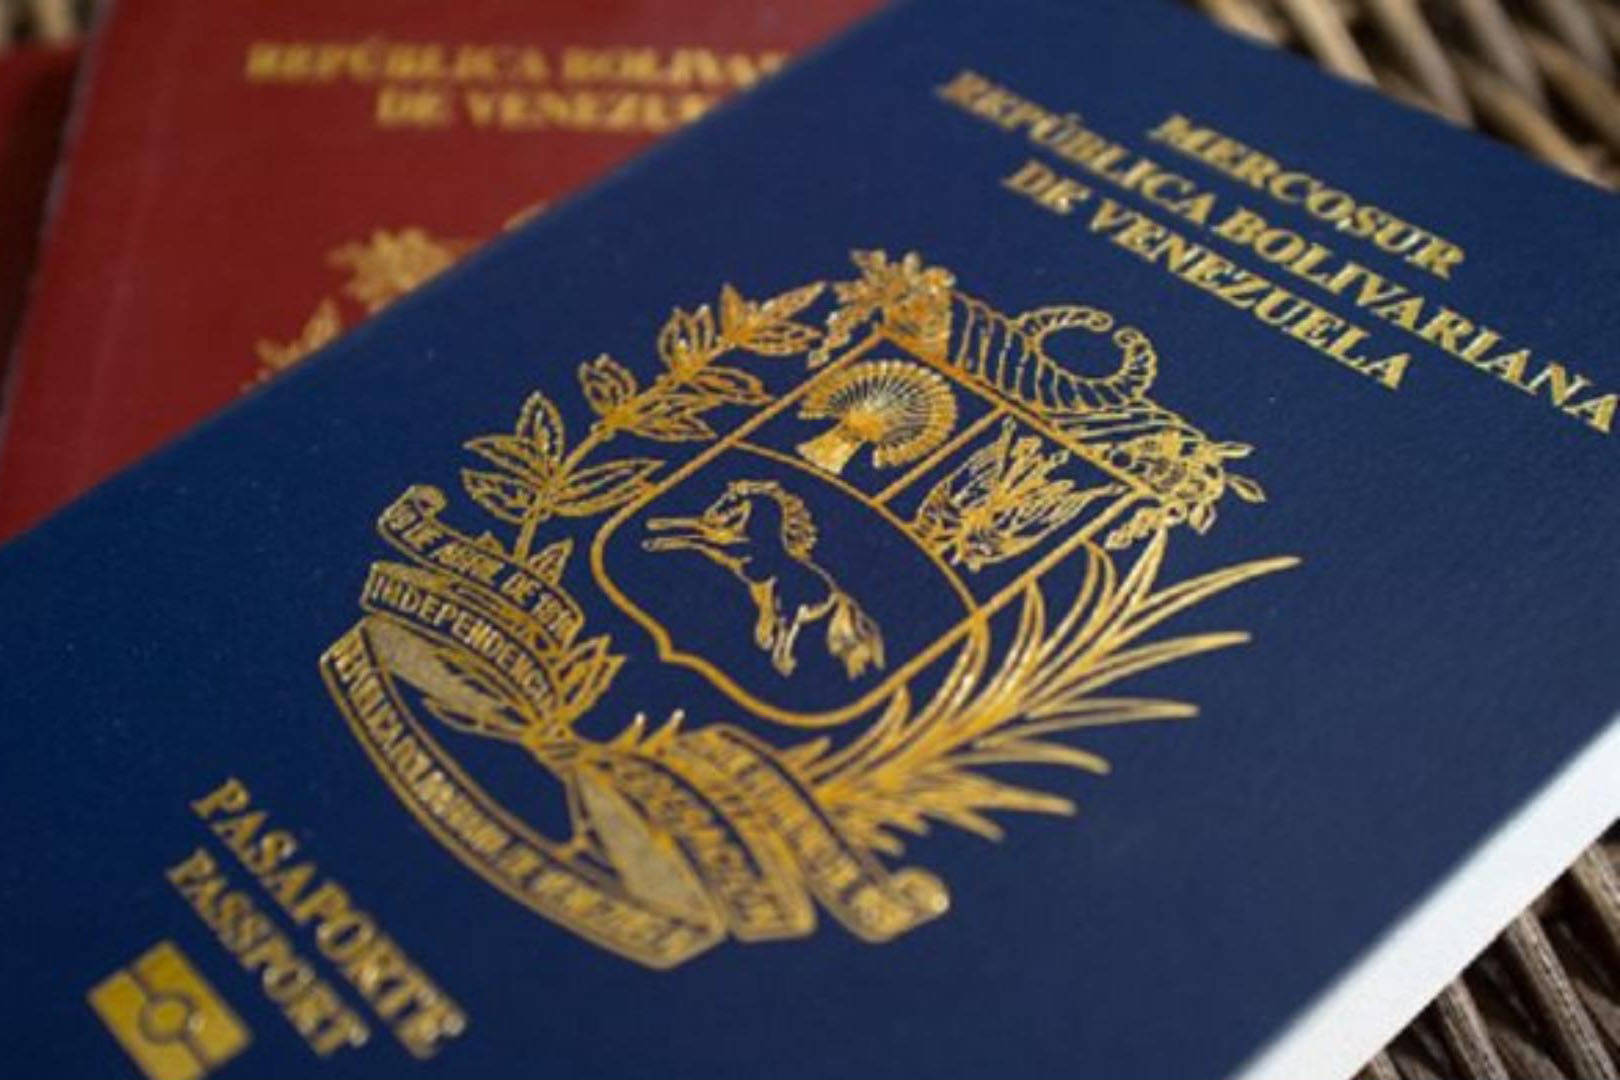 Requisitos de extensión del pasaporte 